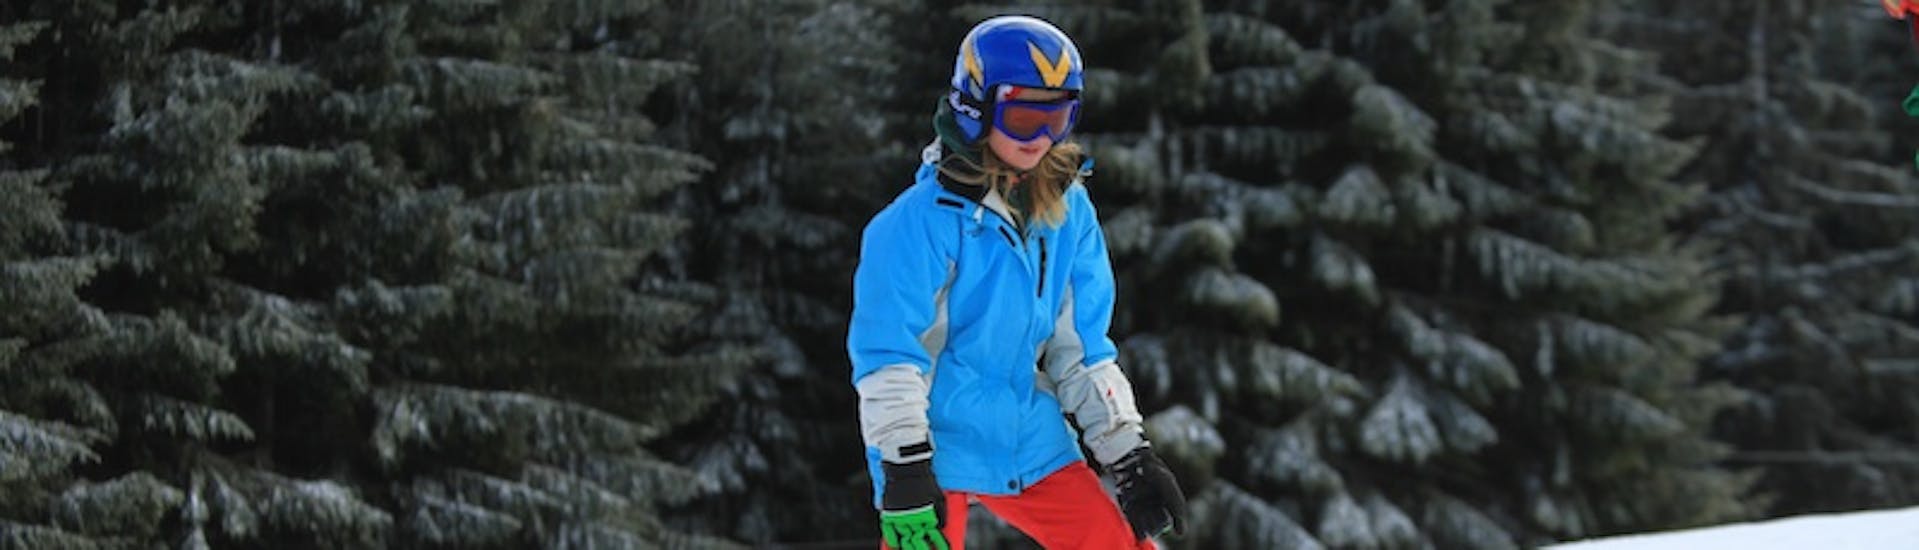 Une petite fille descendant en chasse-neige pendant des cours particuliers de ski pour enfants de tous niveaux avec Skischool Nova.